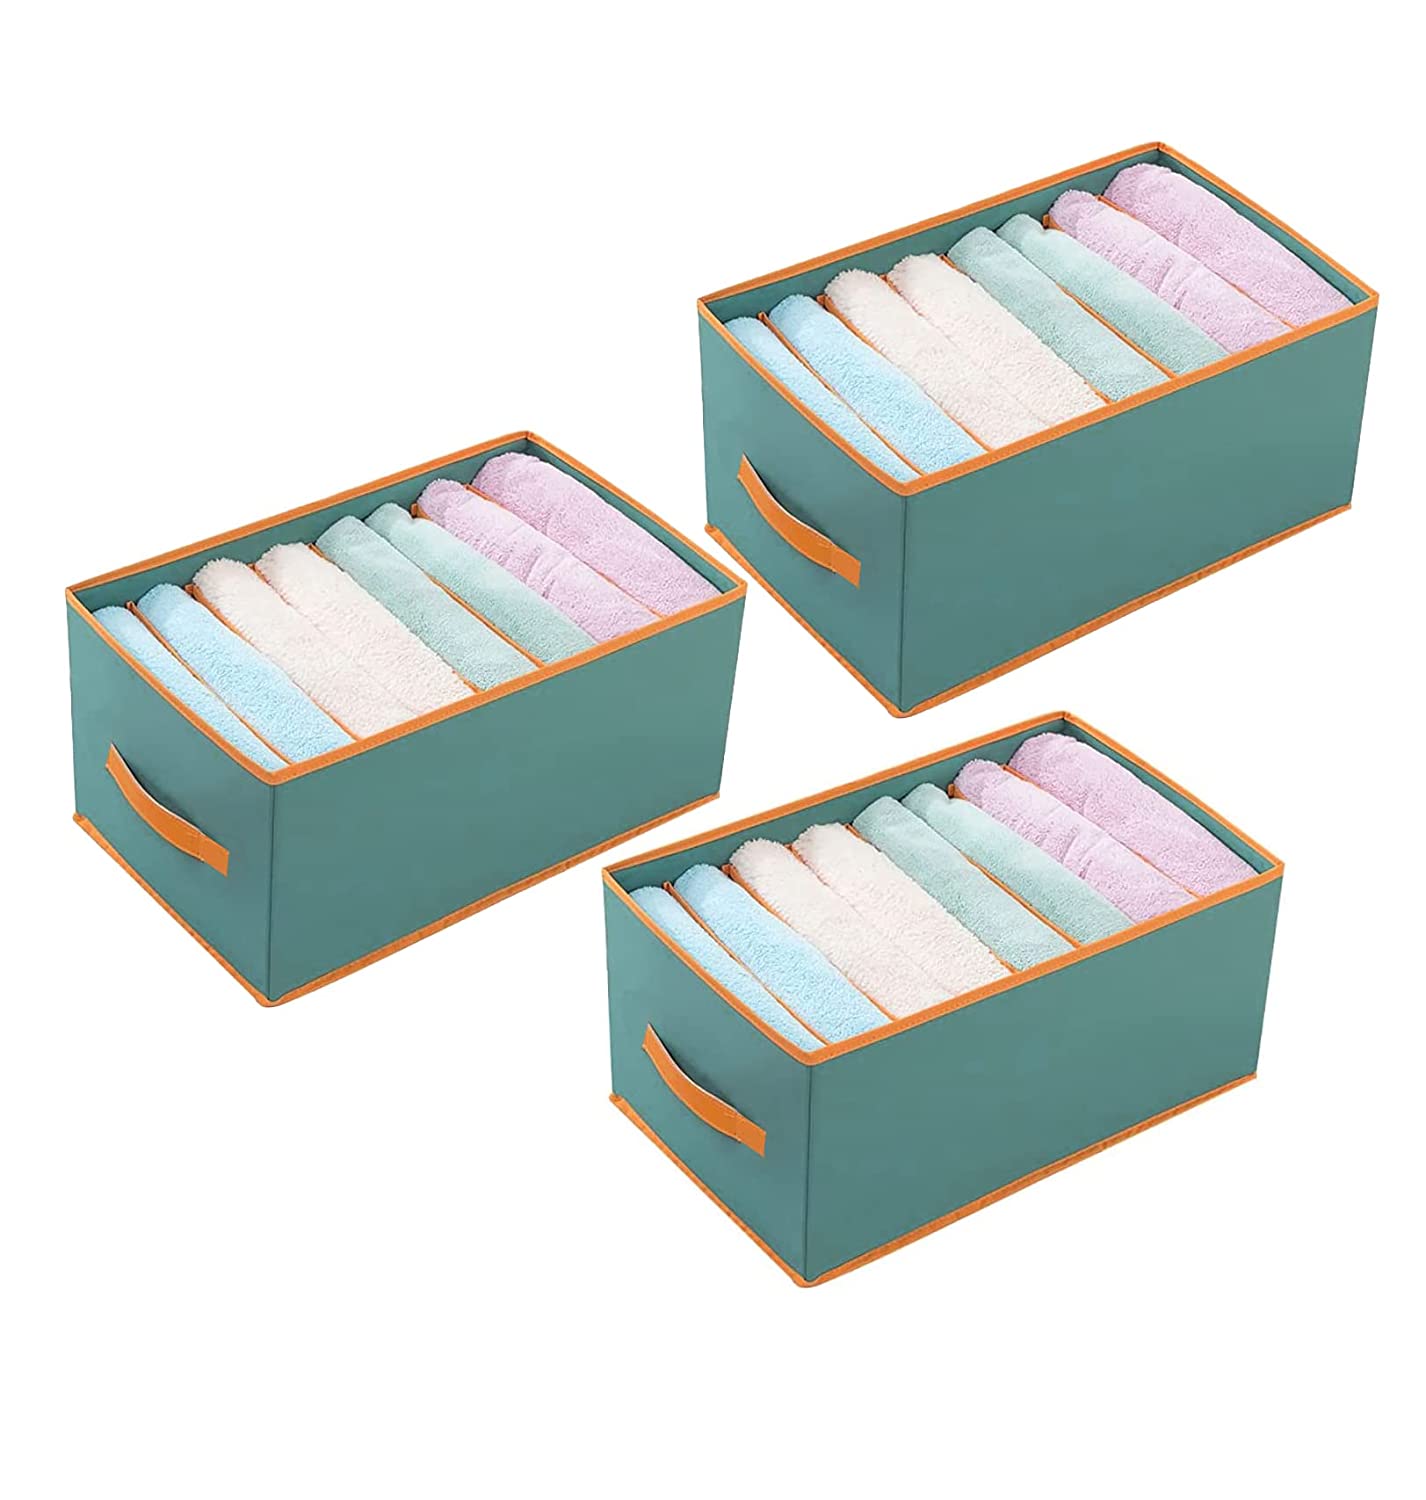 8 Grid Storage Box Organiser (Pack of 3)